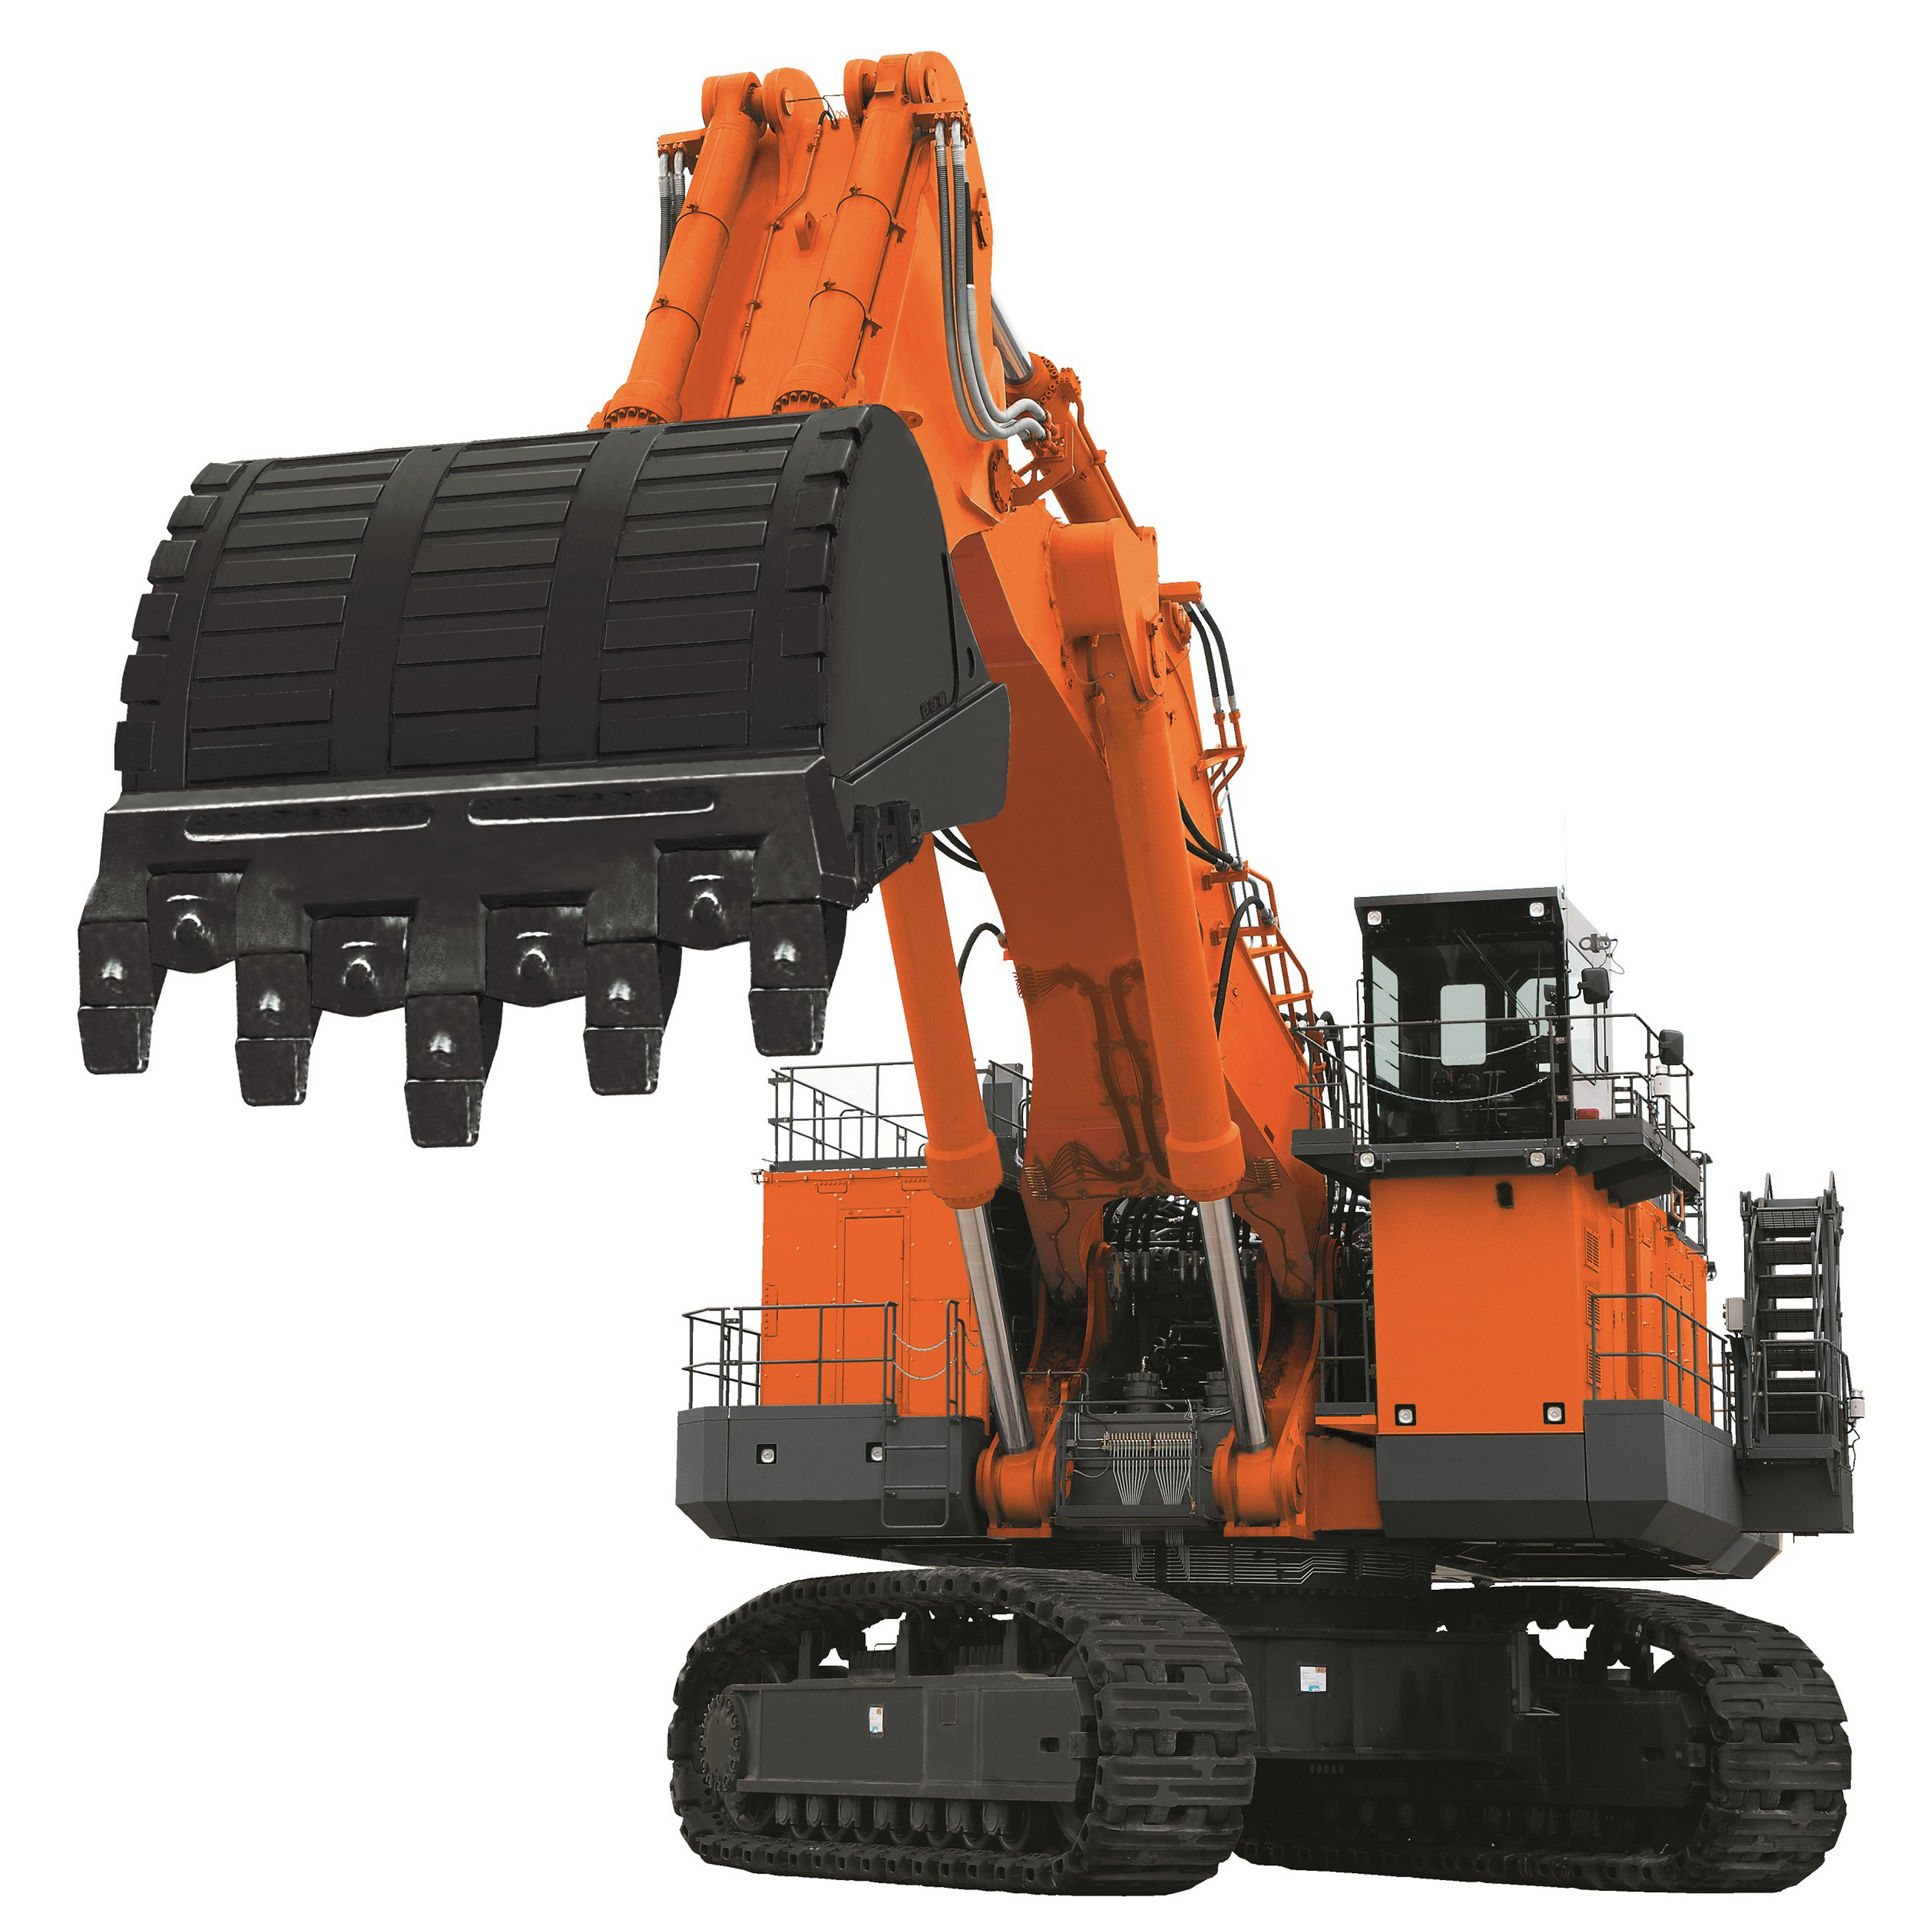 EX5600-7 ultra-large hydraulic backhoe excavator